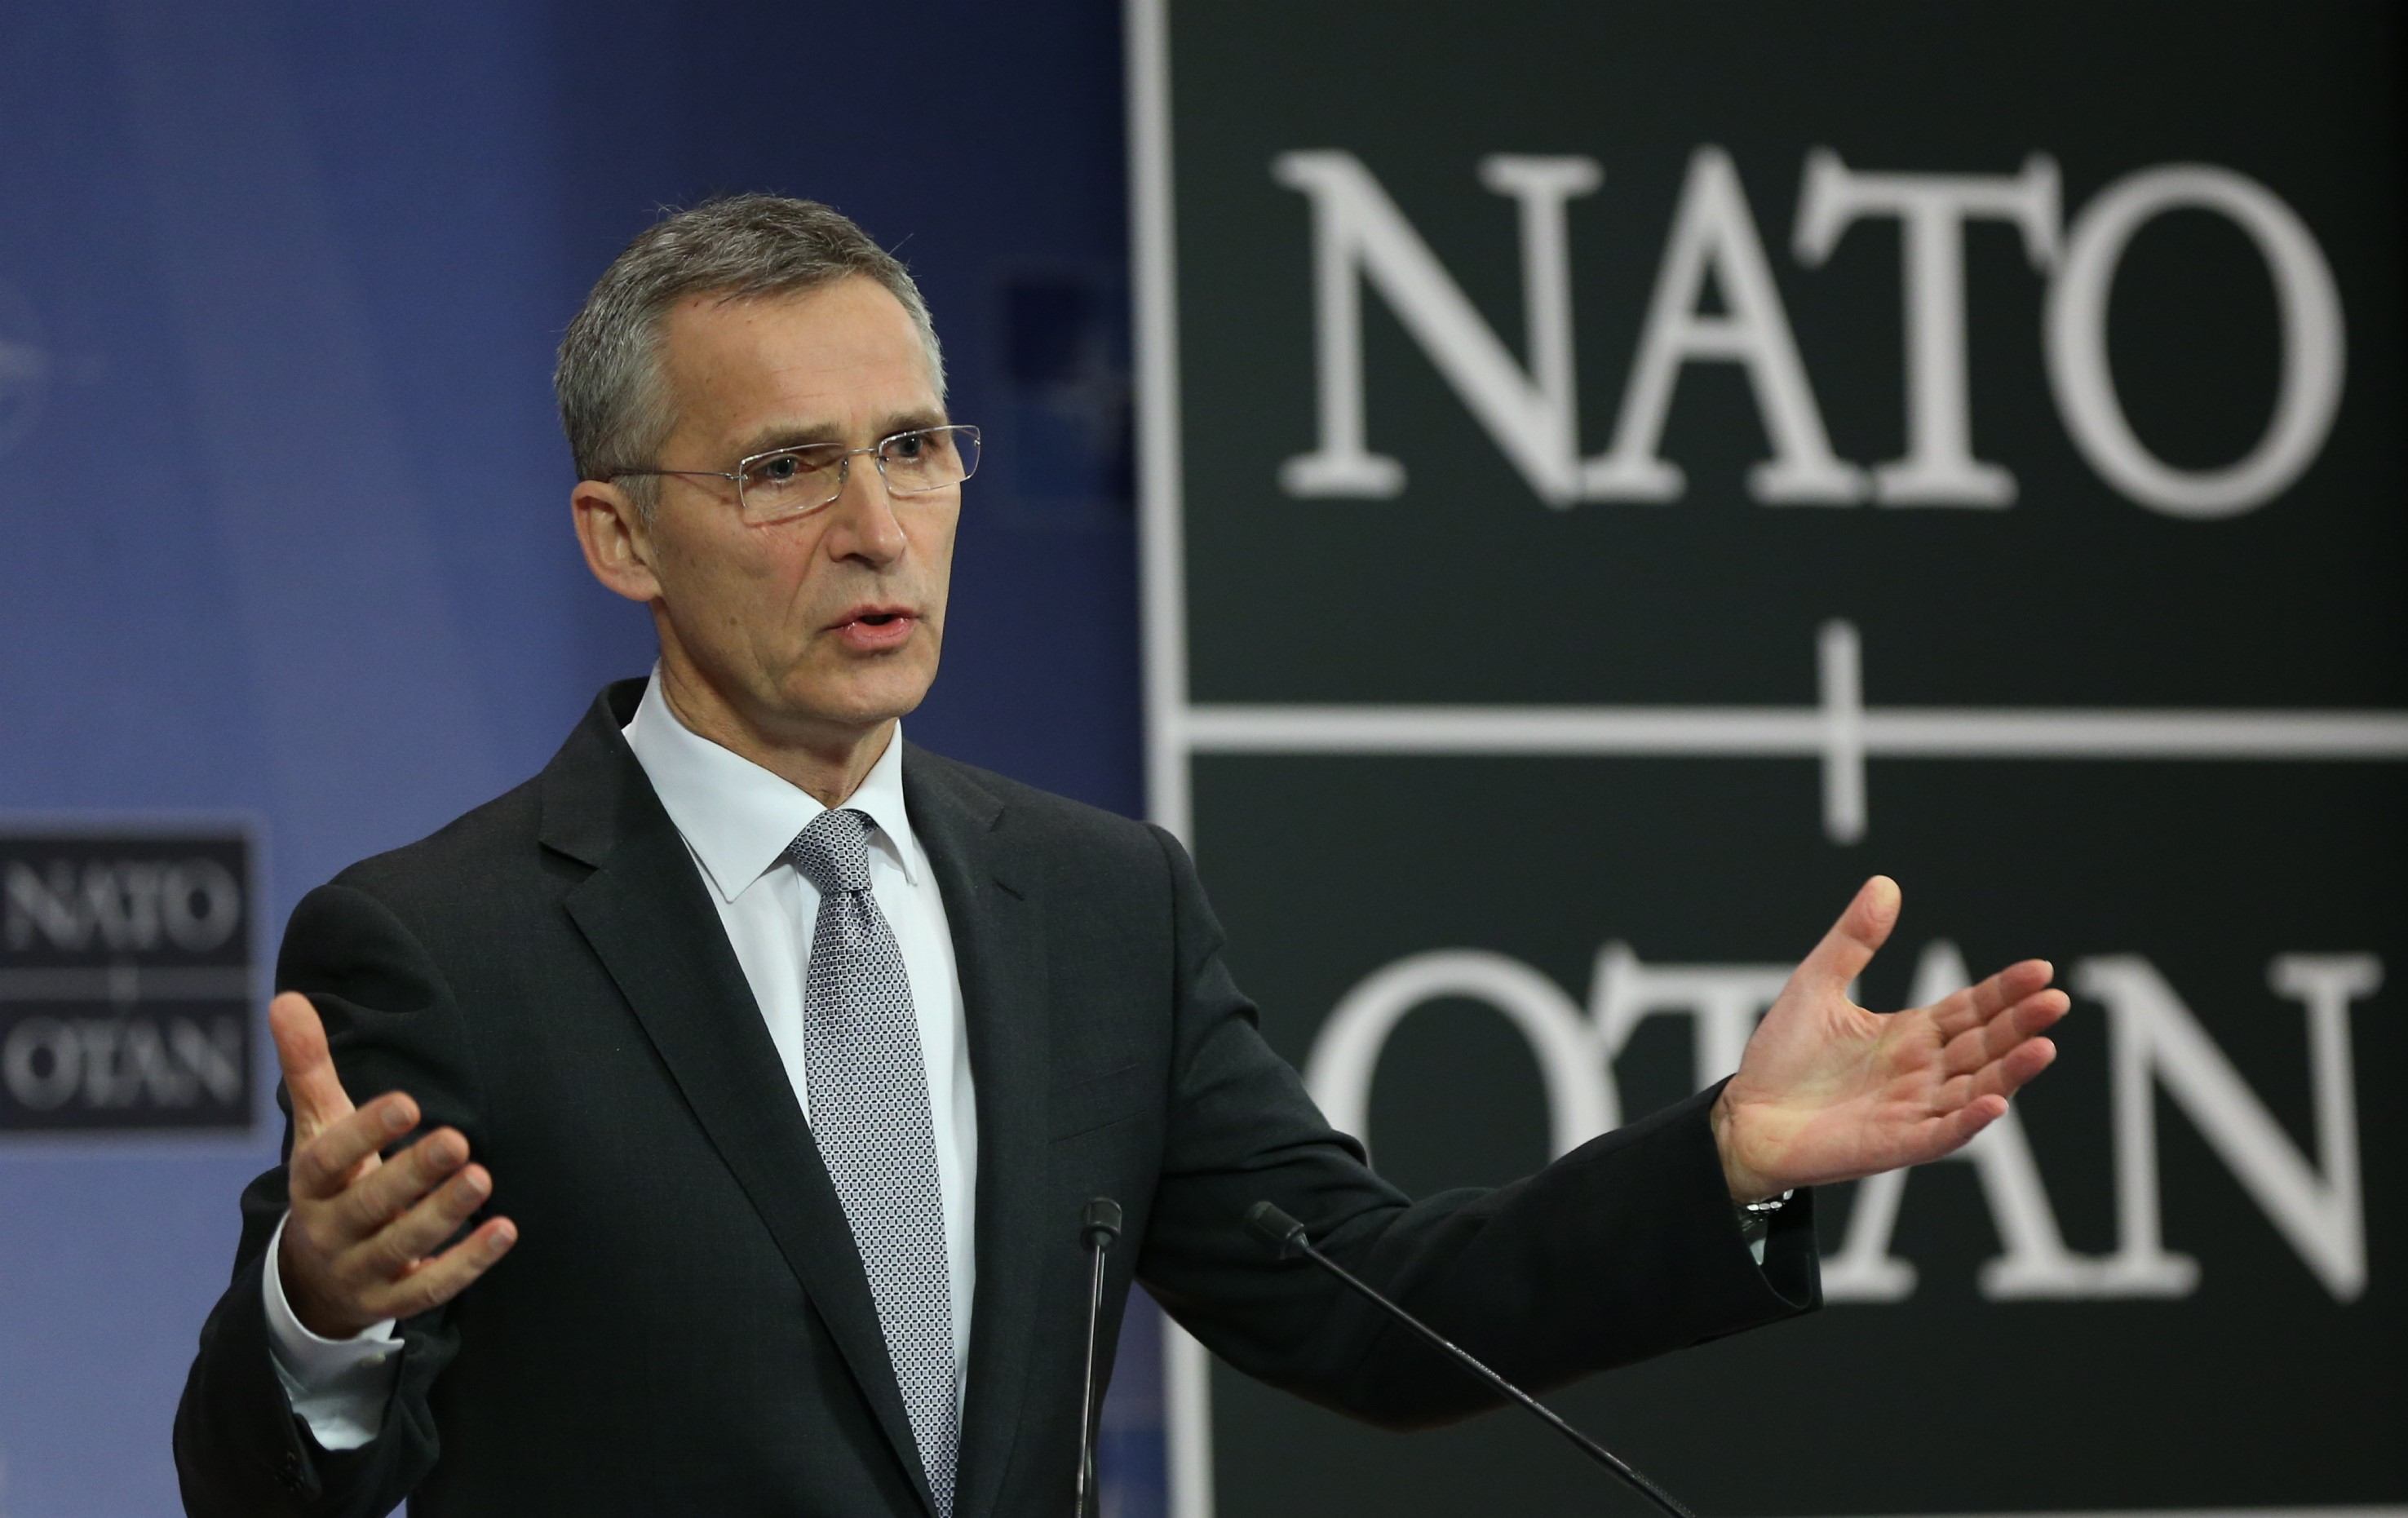 Secretarul general al NATO Jens Stoltenberg: Dialogul dintre NATO şi Rusia este dificil, însă necesar